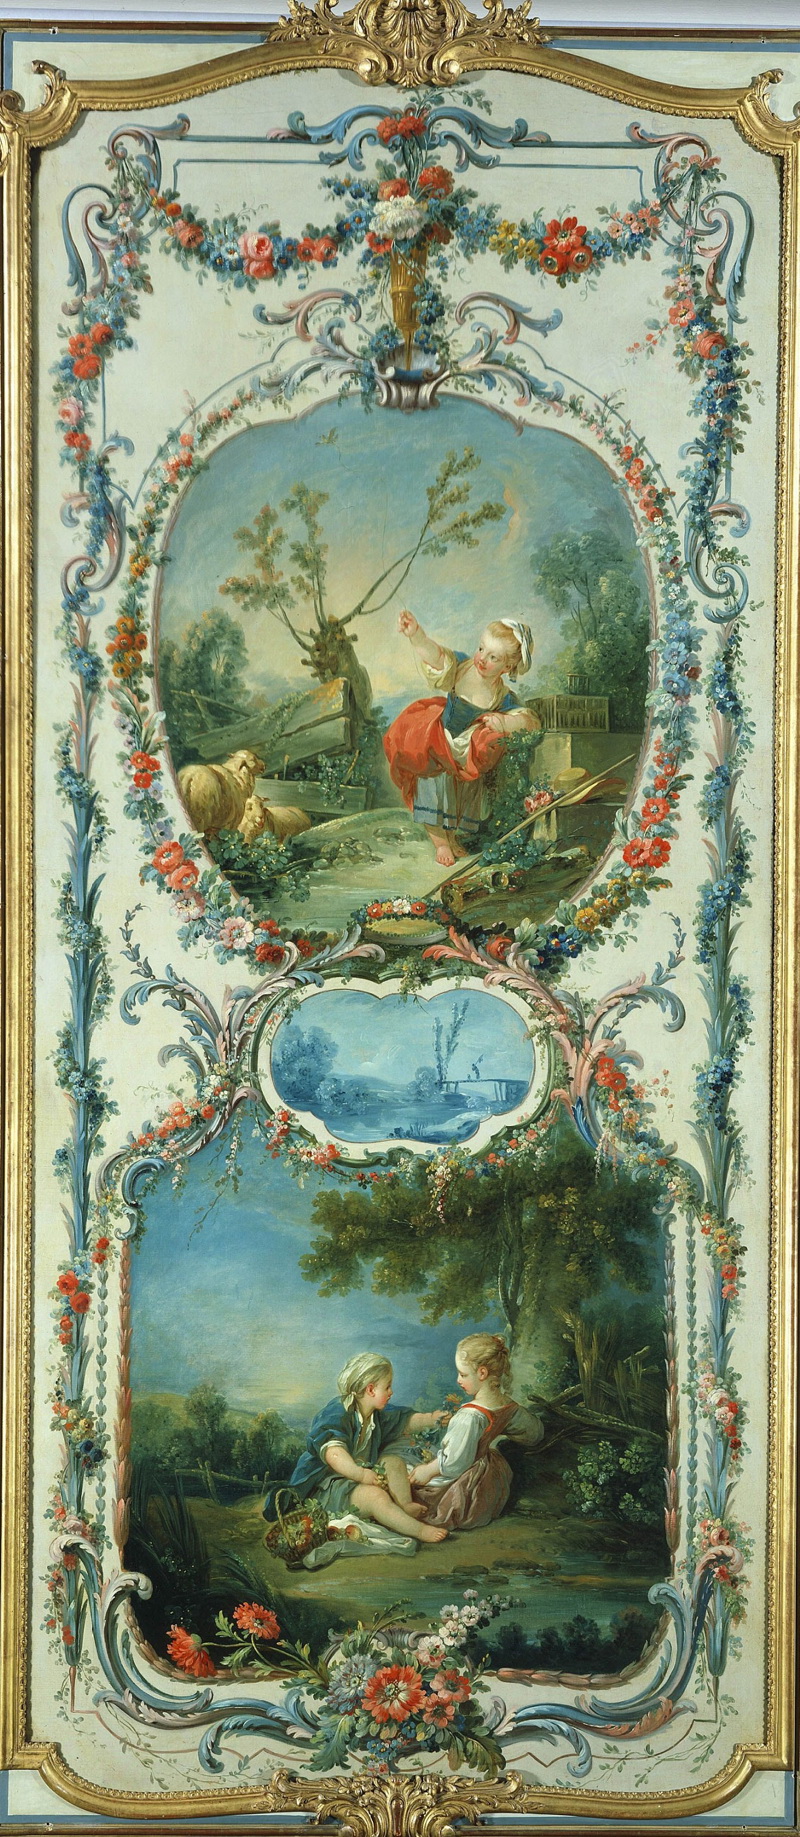 A022042《捕鸟和园艺》法国画家弗朗索瓦·布歇高清作品 油画-第1张